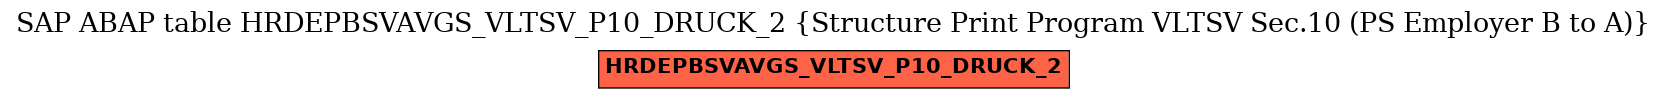 E-R Diagram for table HRDEPBSVAVGS_VLTSV_P10_DRUCK_2 (Structure Print Program VLTSV Sec.10 (PS Employer B to A))